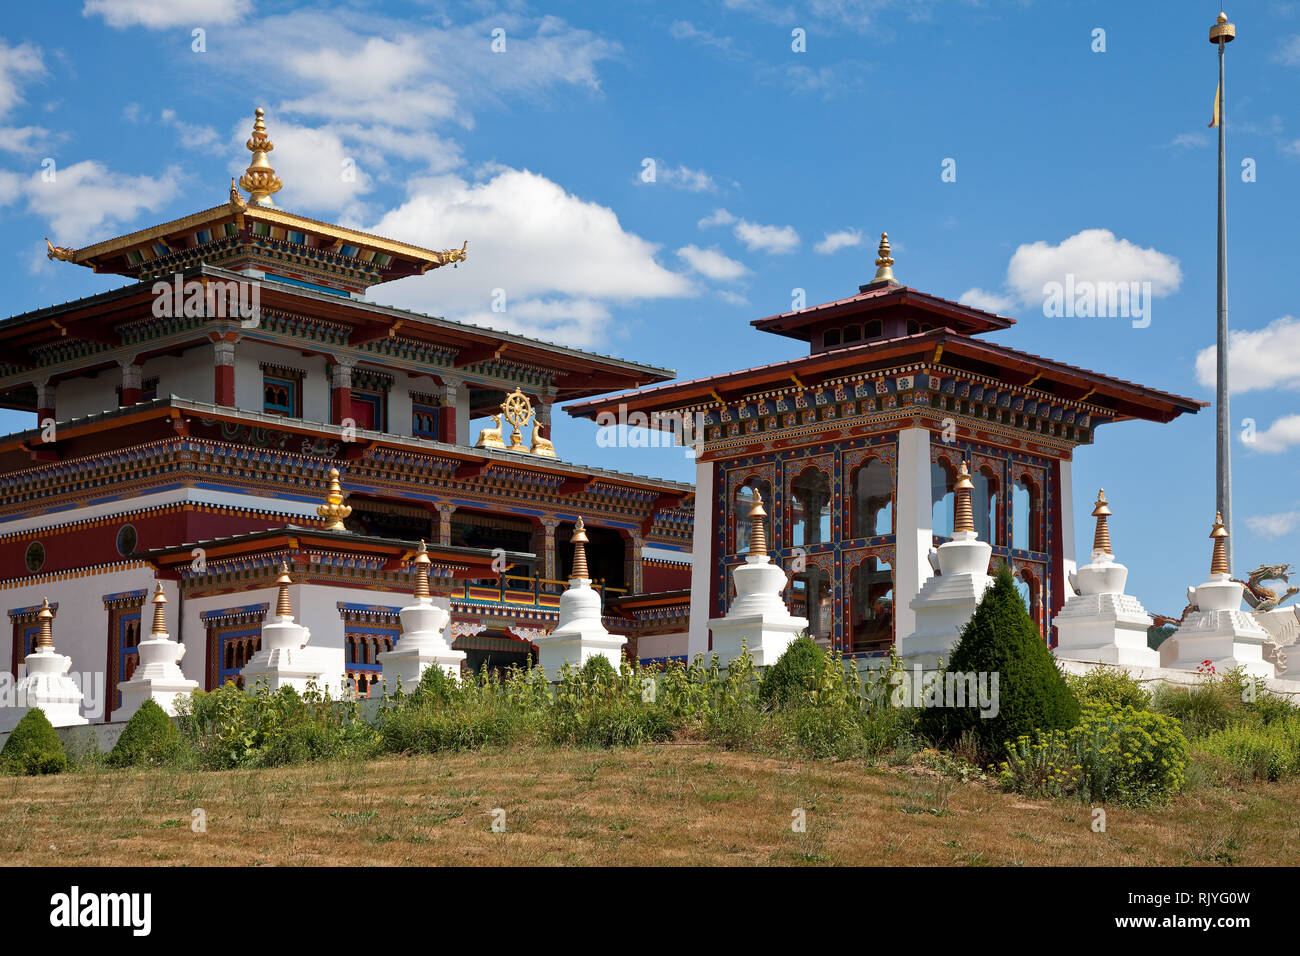 La Boulaye, TEMPEL DER 1000 Budas, gegründet 1987 von tibetischen Mönchen. Lamaistisches Zentrum verbunden mit einer Hochschule für Tibetologie, lin Foto de stock